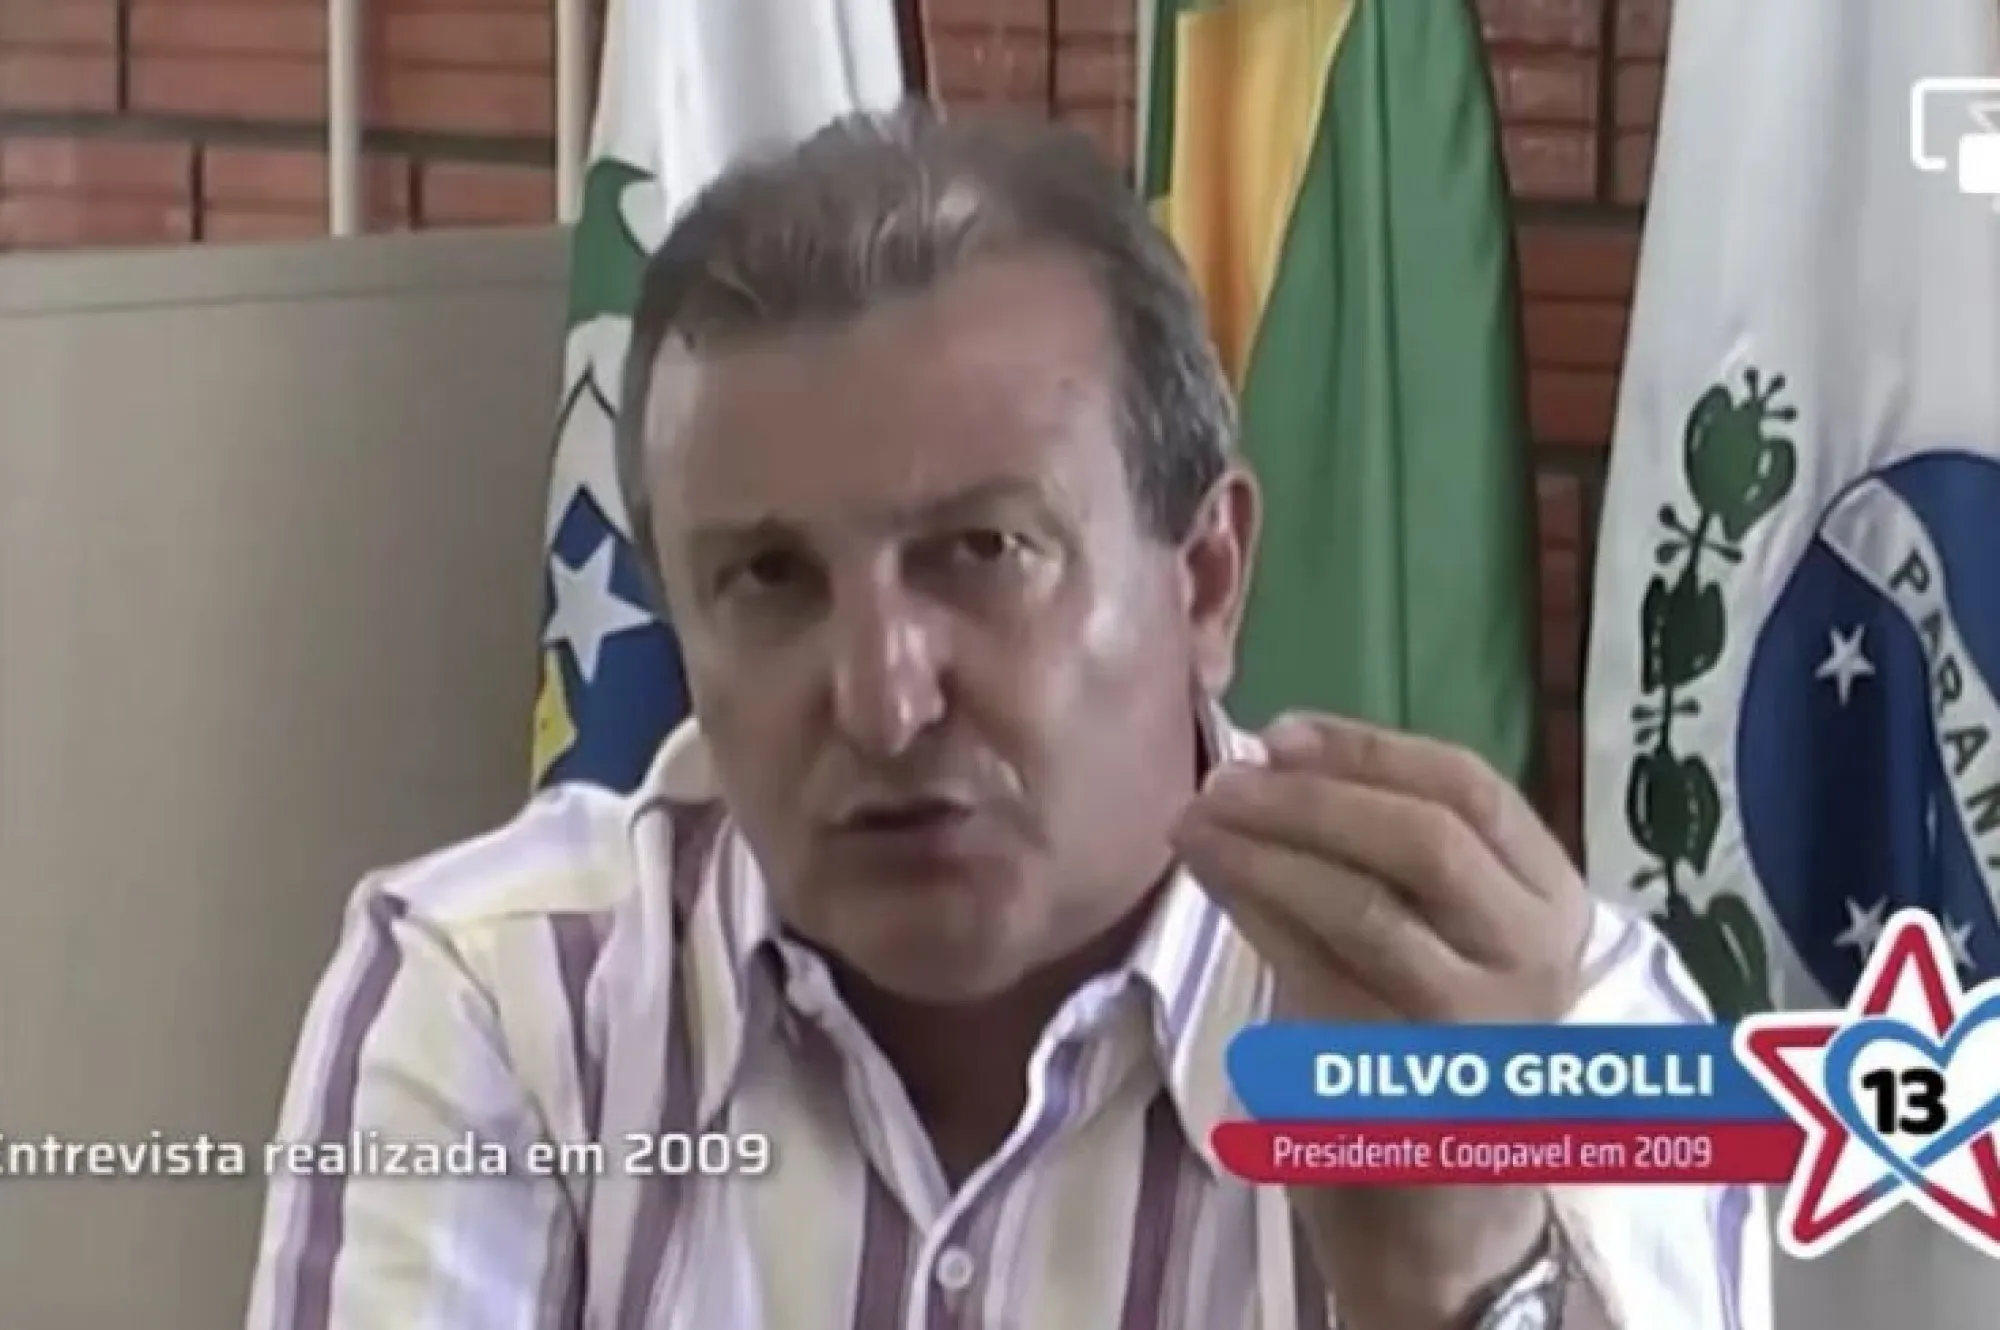 dilvo trator solidário, dilvo grolli, gravação dilvo grolli, Roberto Requião, candidato a governador